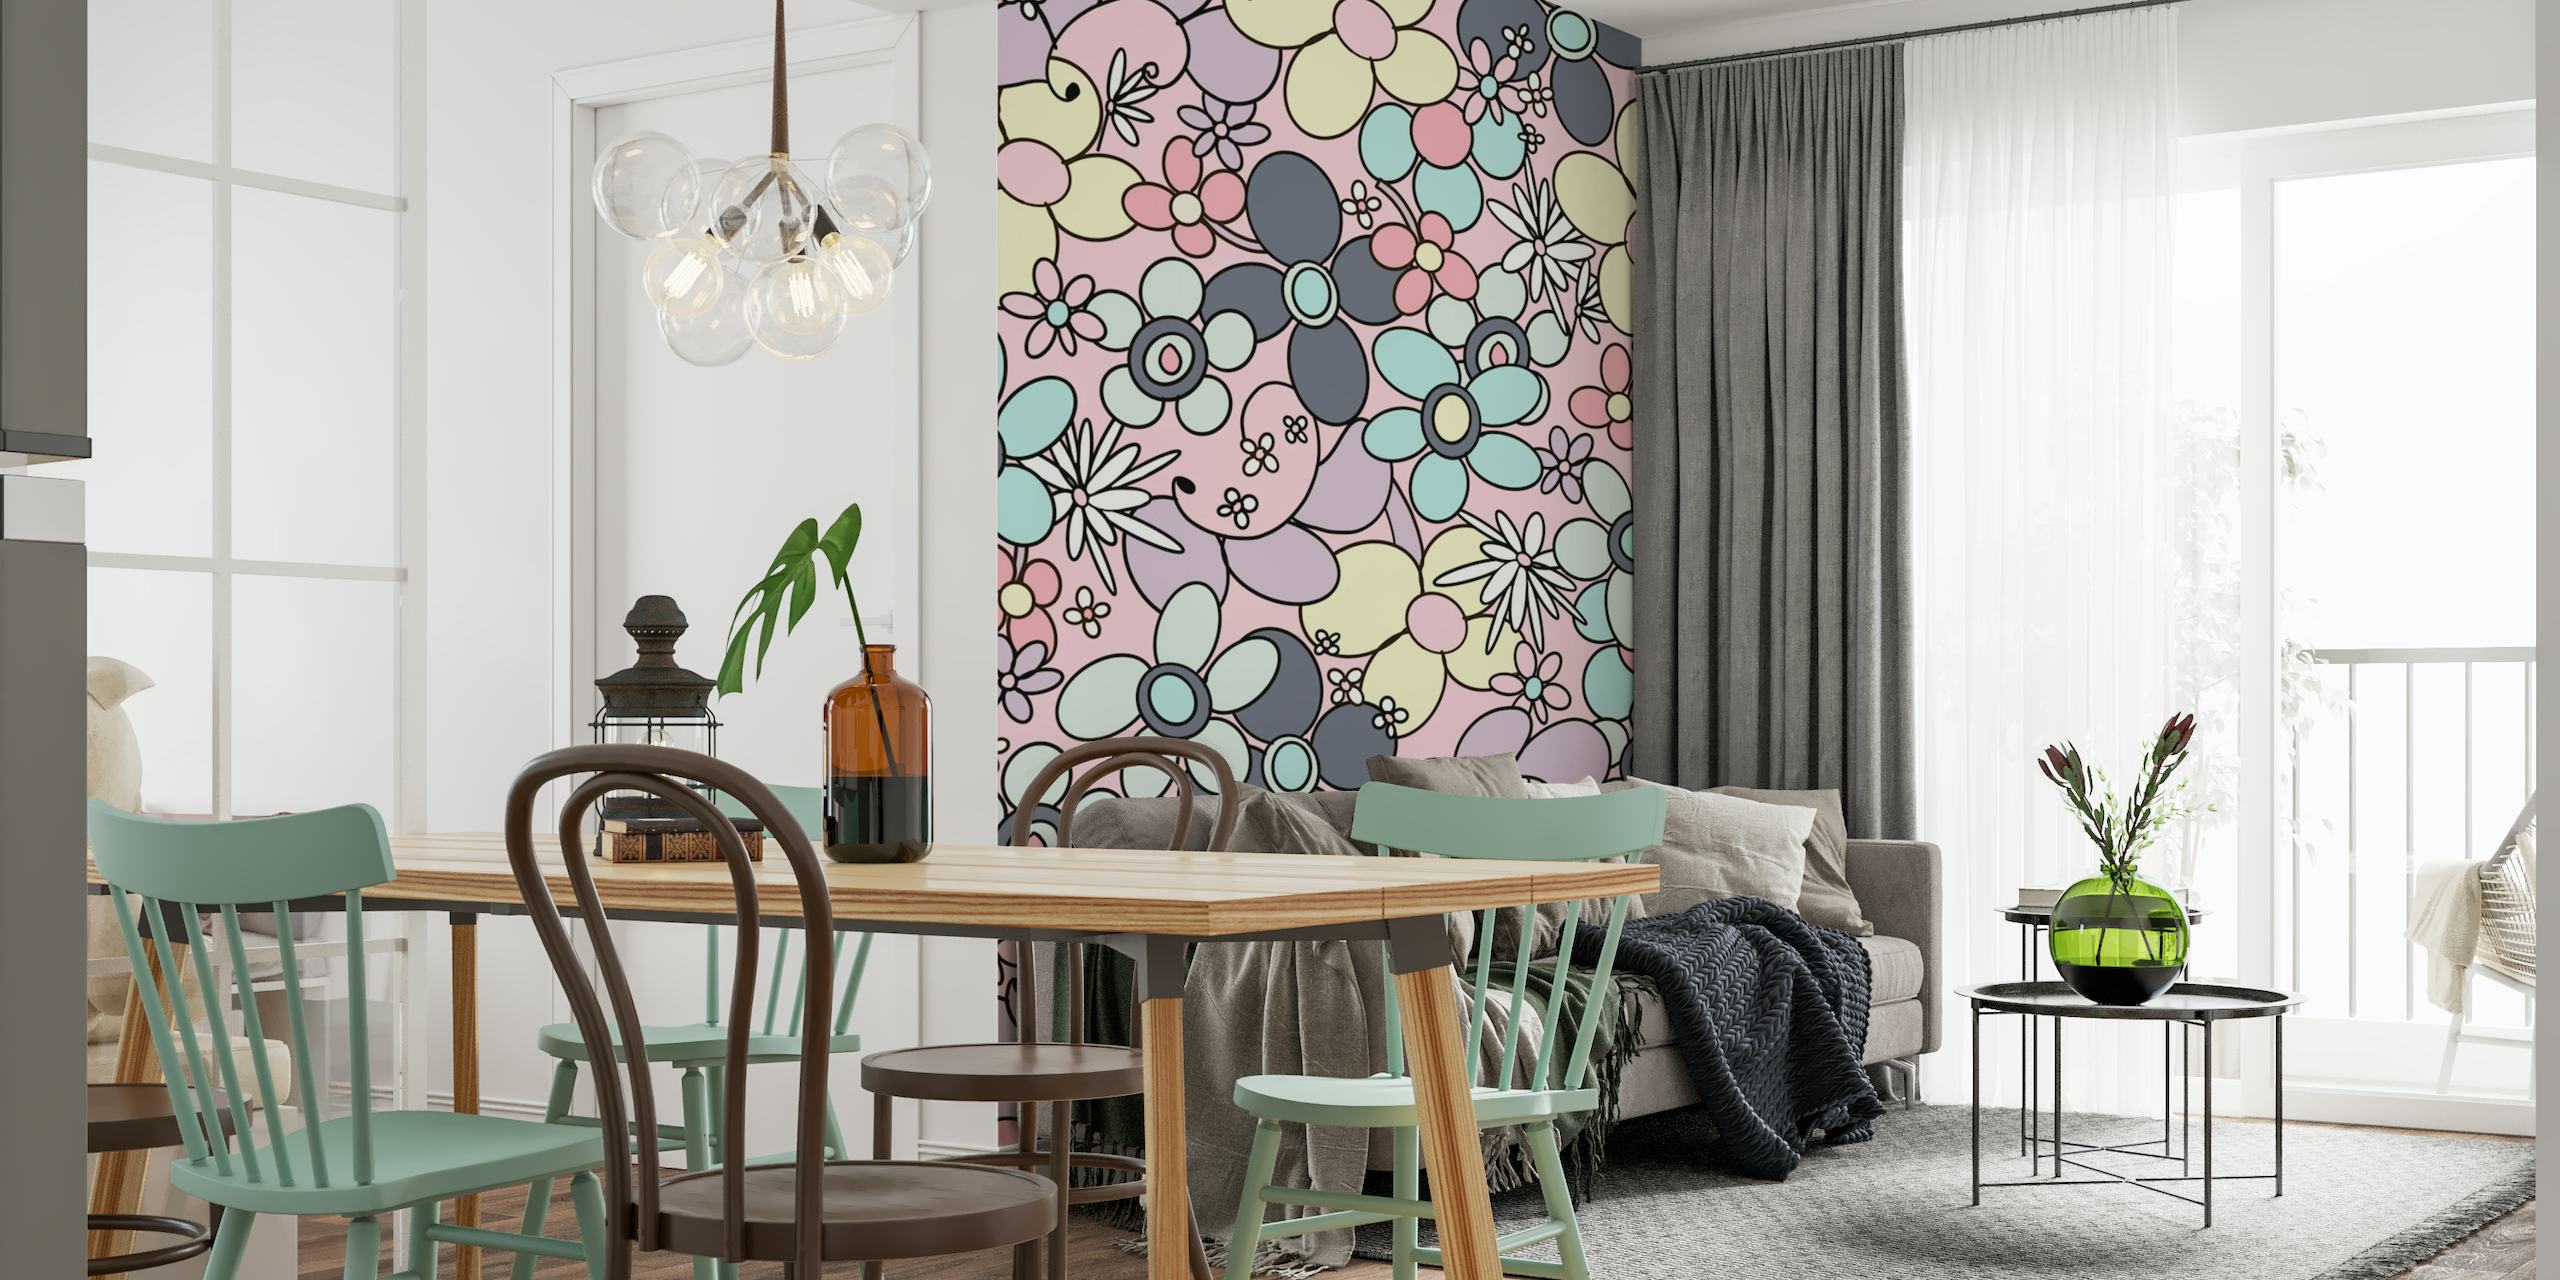 Retro blomst mønster vægmaleri med pastelfarver fra 60'erne og 70'erne æraen.